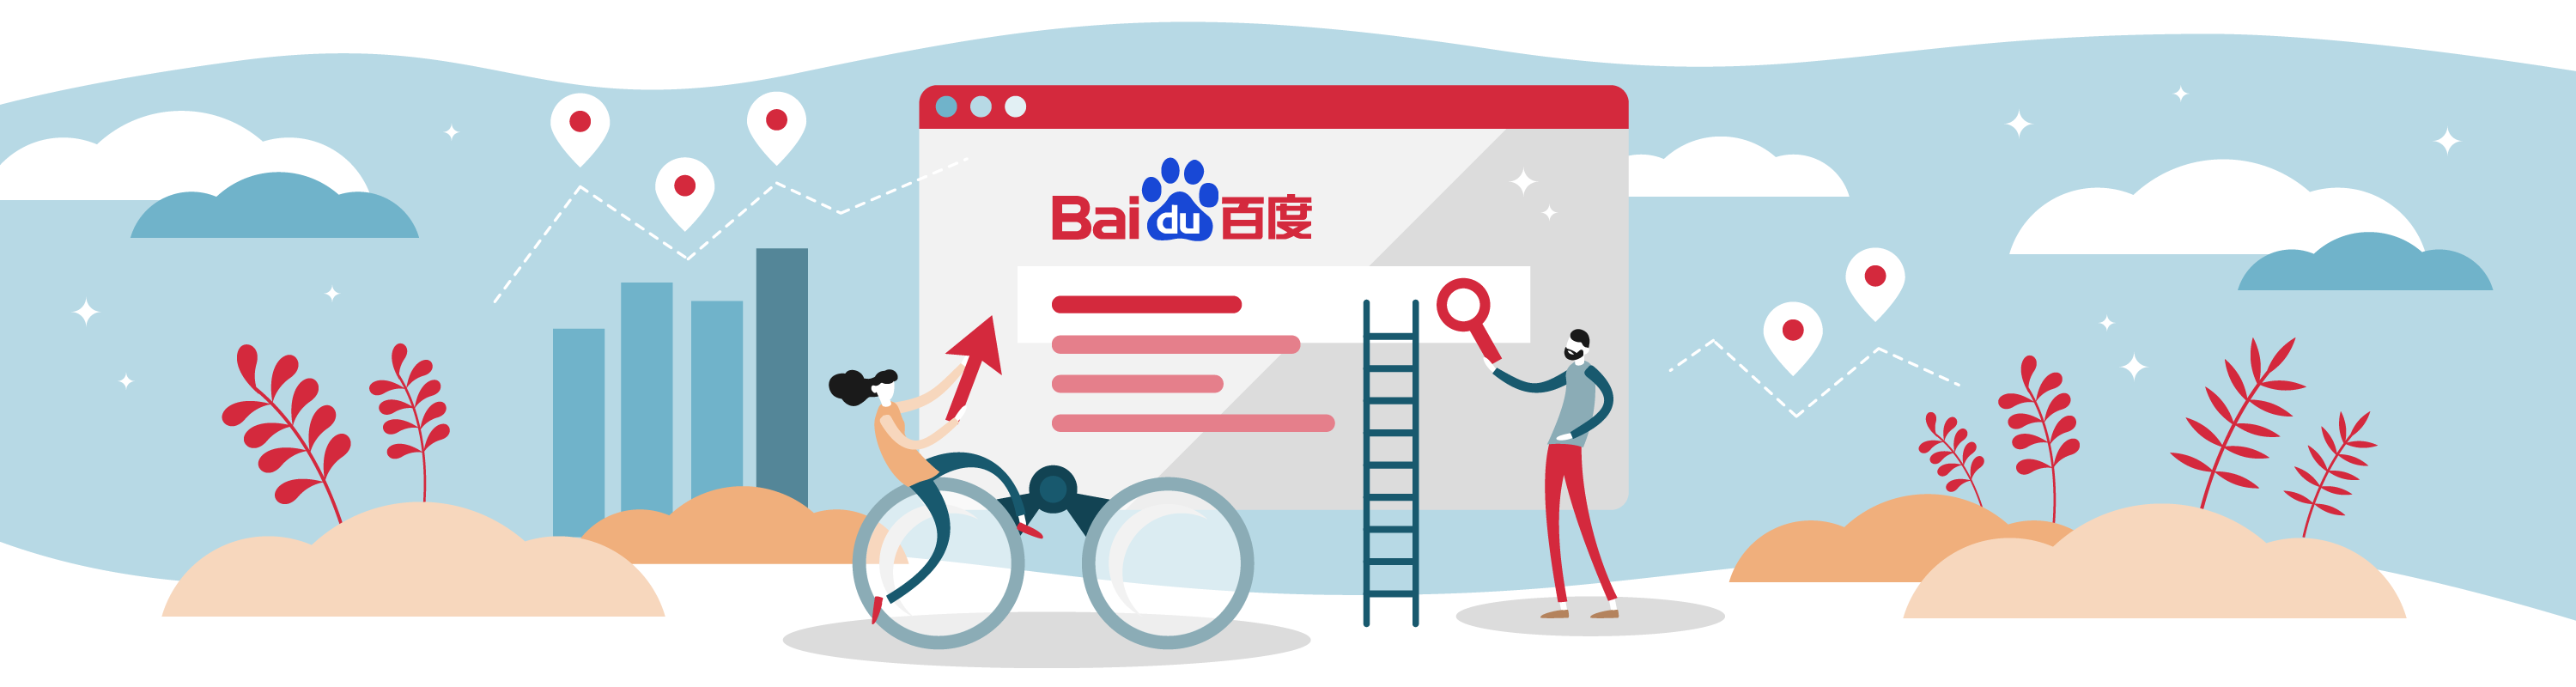 Espandi la tua attività con Baidu: il rivale numero uno di Google